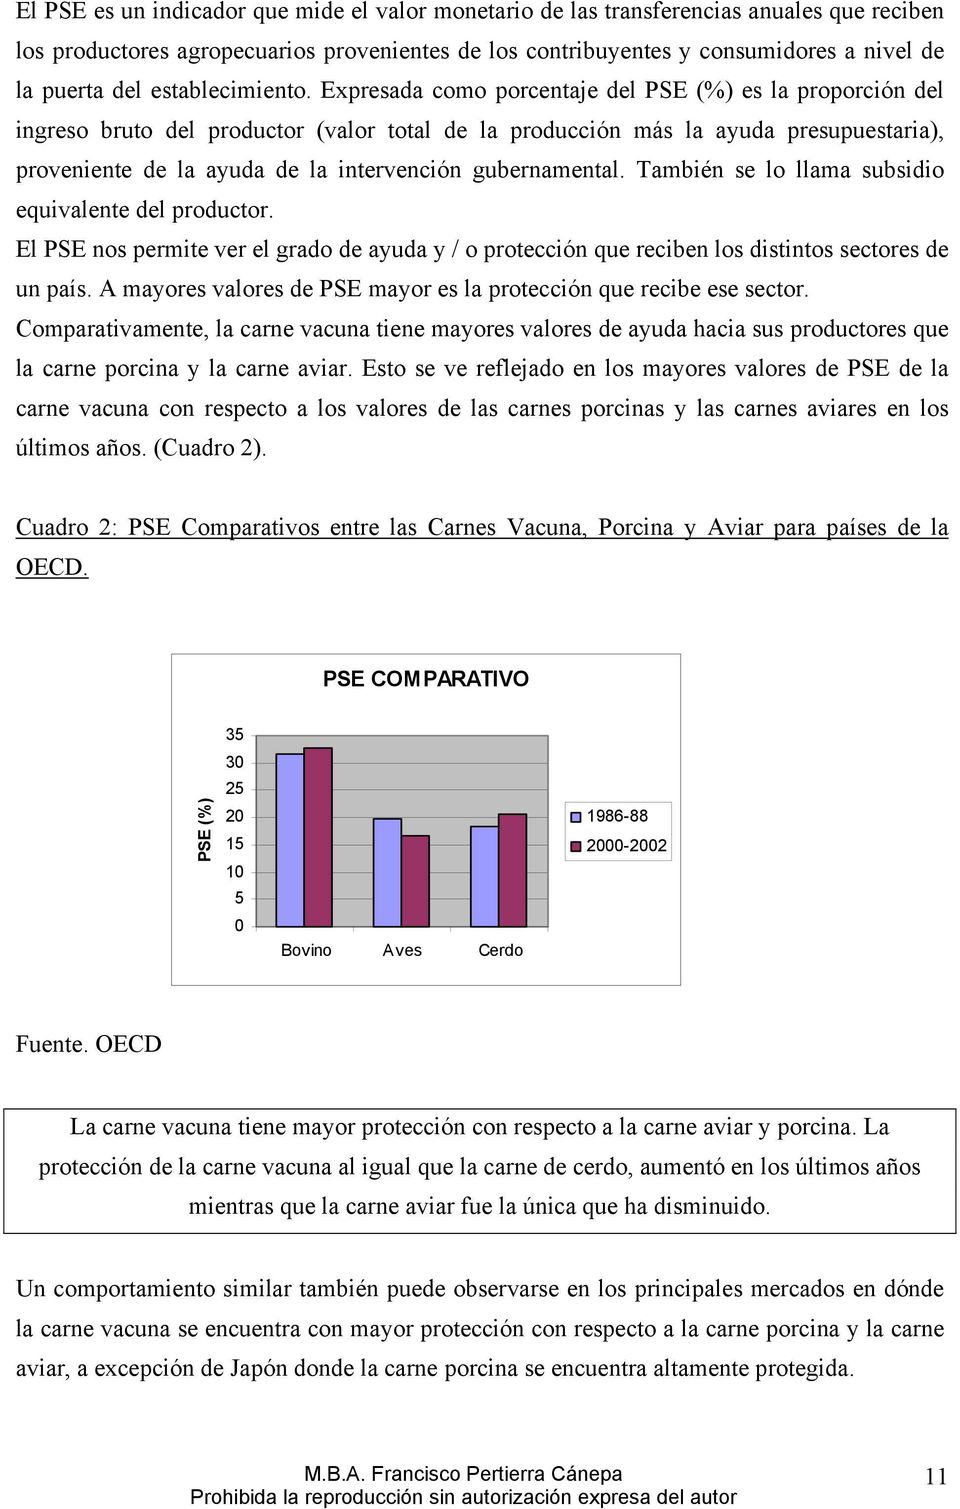 Expresada como porcentaje del PSE (%) es la proporción del ingreso bruto del productor (valor total de la producción más la ayuda presupuestaria), proveniente de la ayuda de la intervención